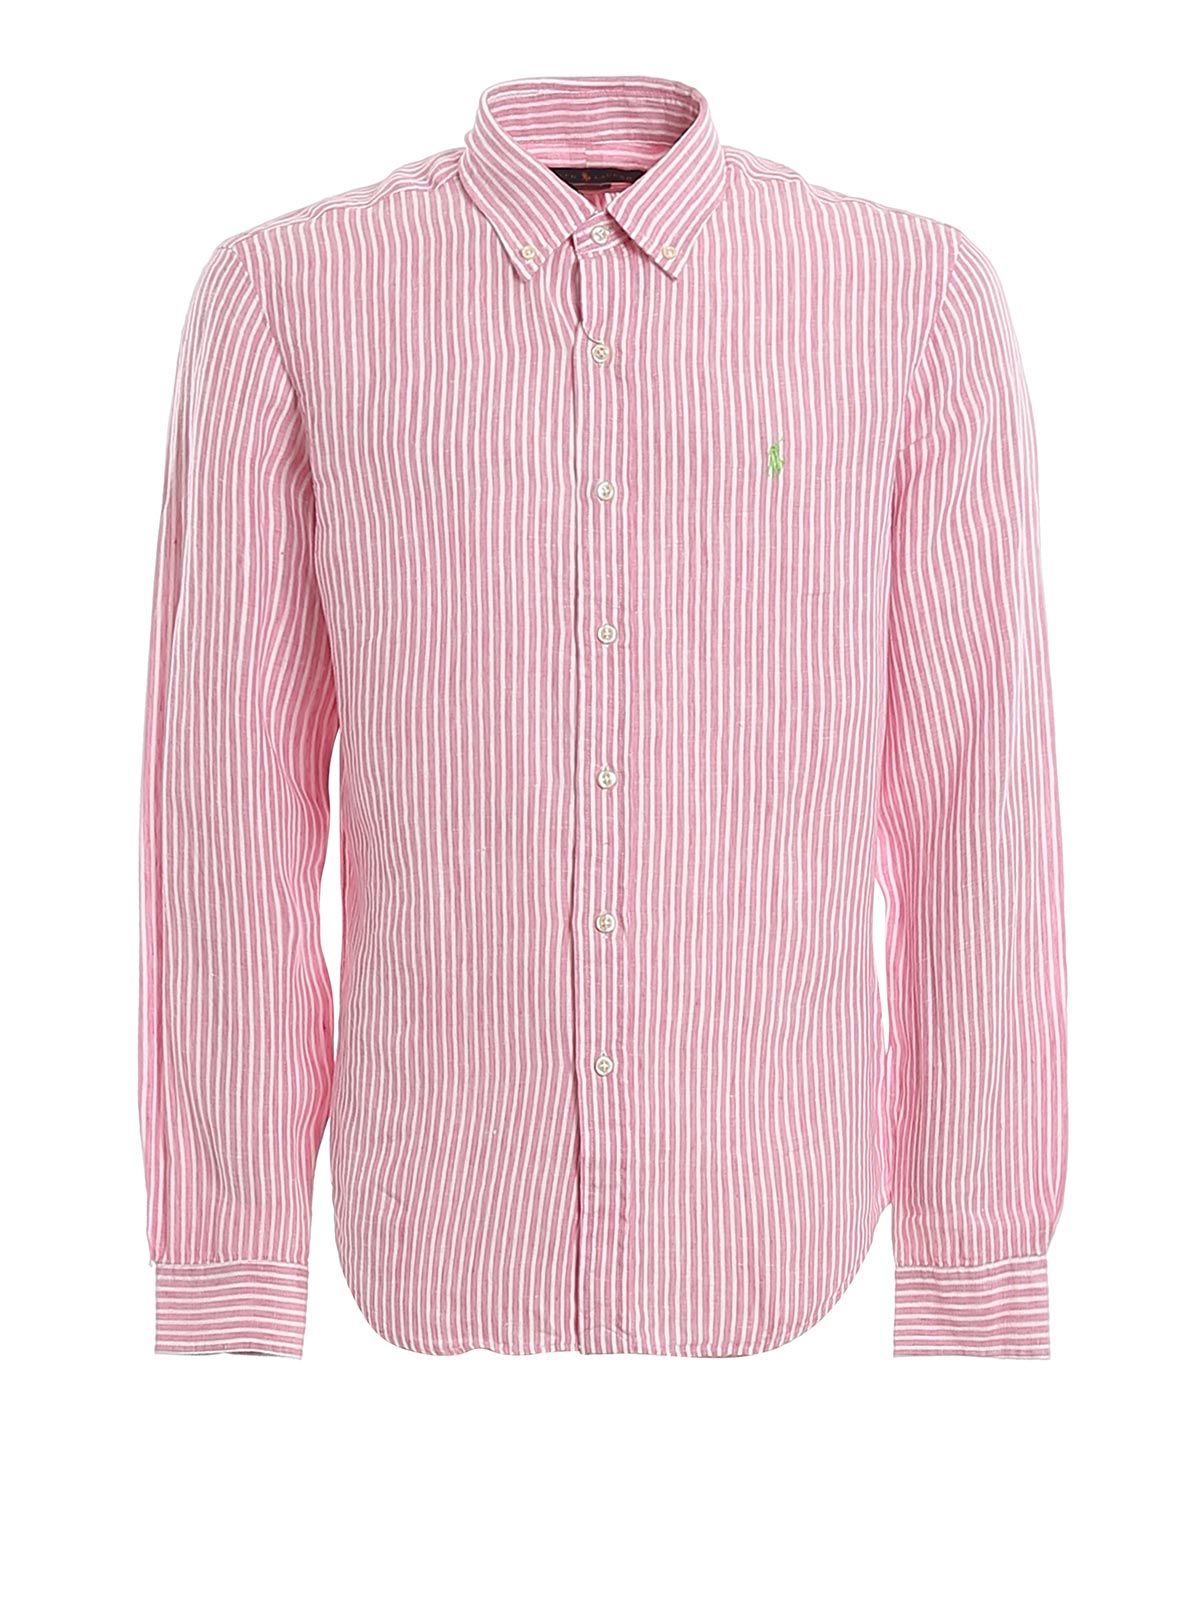 pink striped ralph lauren shirt